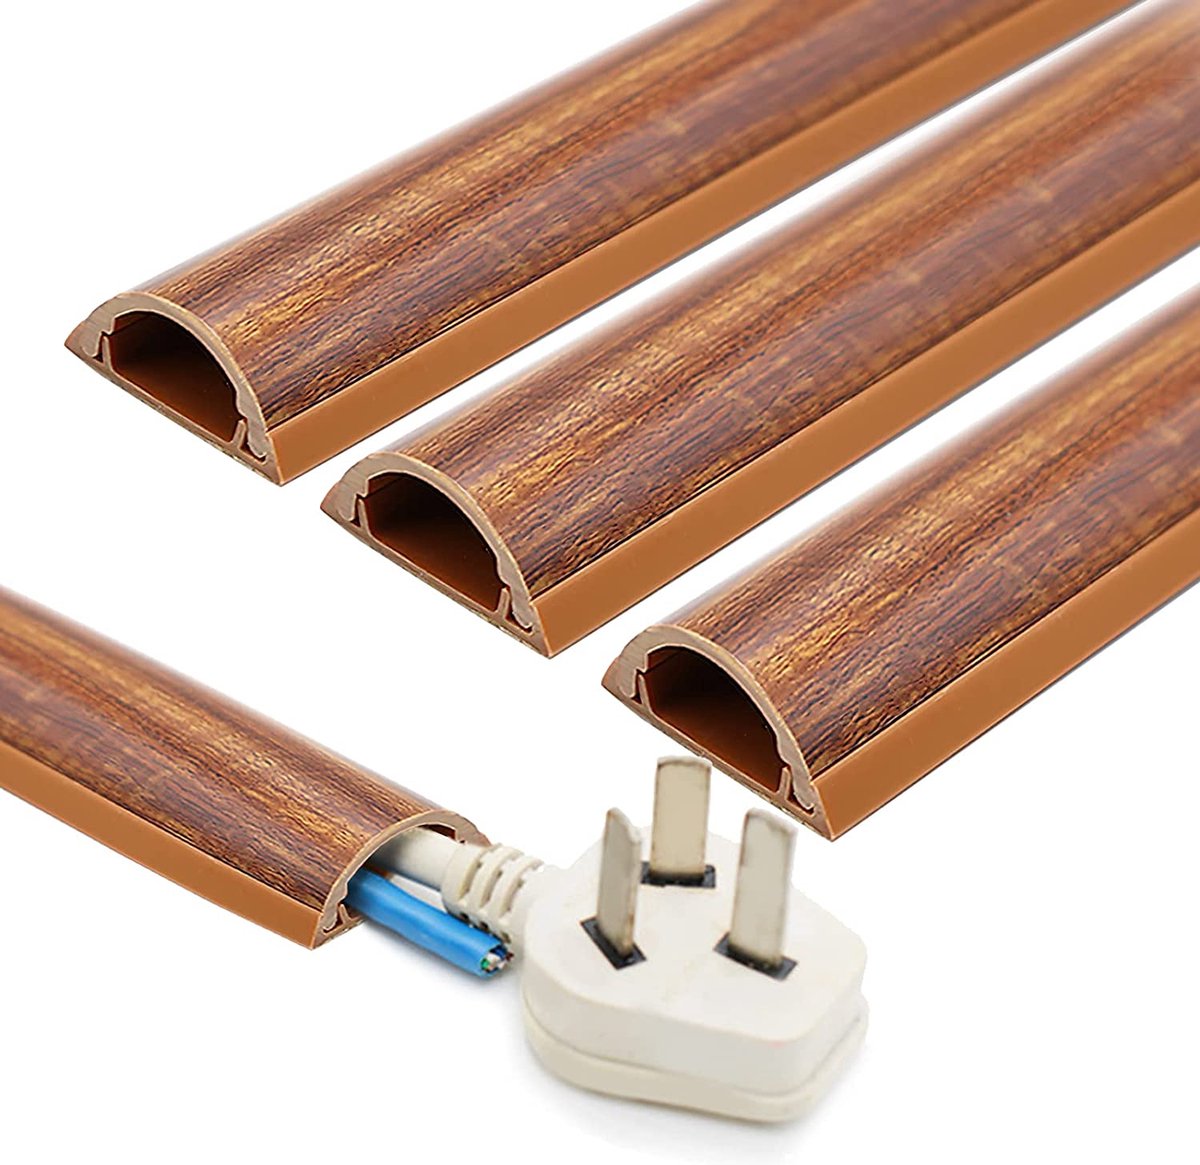 INCETUE kabelgoot houtlook voor vloer, kabelgoot plat zelfklevend, halfronde kabelhoes voor inbouwkabel, PVC kabelstrip vloer 3x1,2x30cm x 13 stuks. - Donker bruin